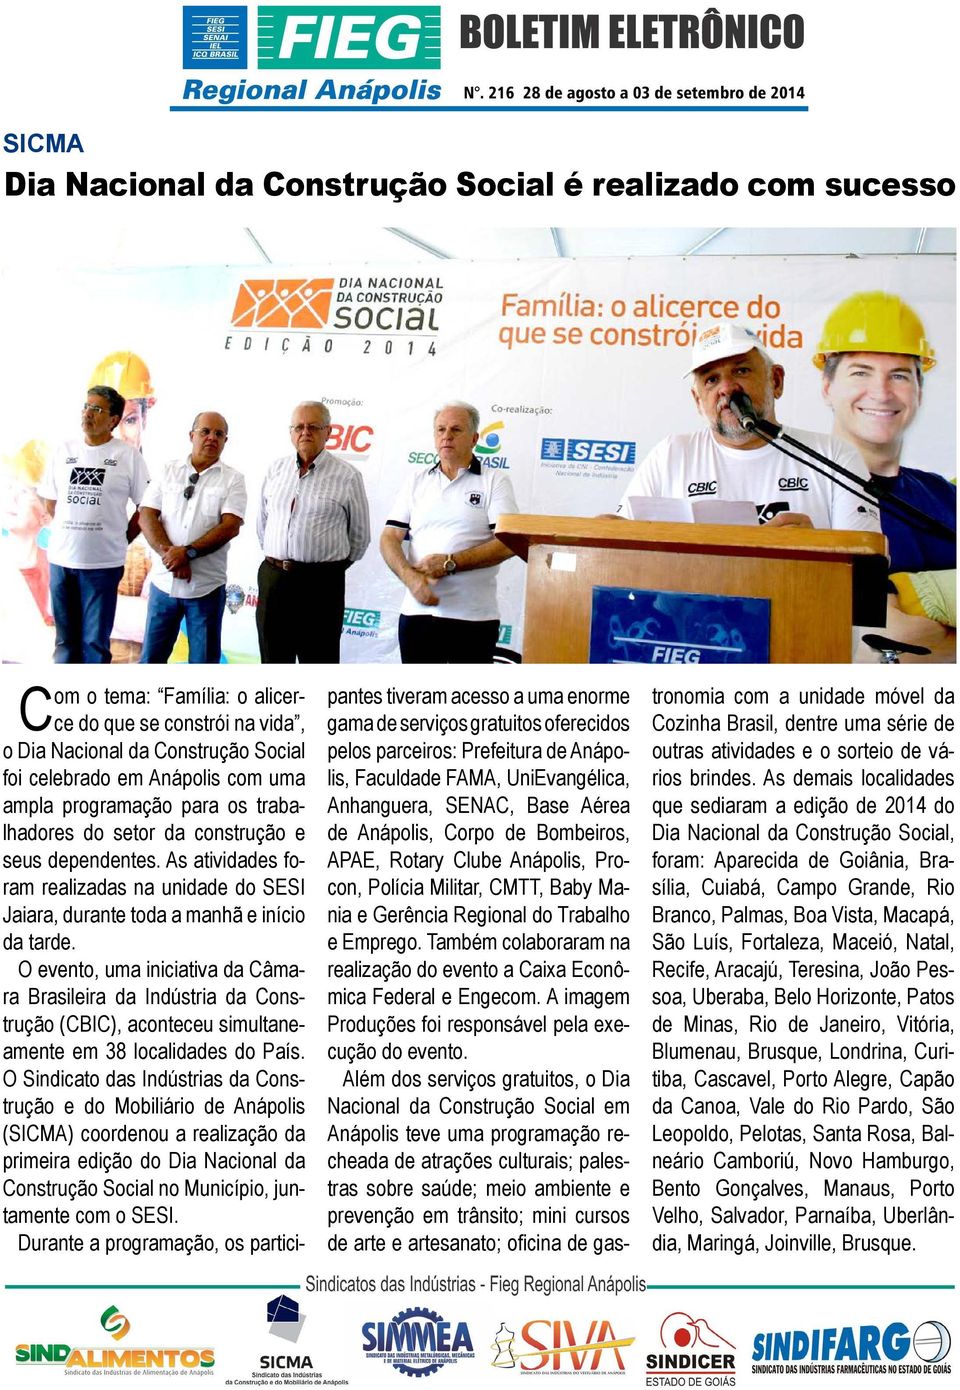 O evento, uma iniciativa da Câmara Brasileira da Indústria da Construção (CBIC), aconteceu simultaneamente em 38 localidades do País.